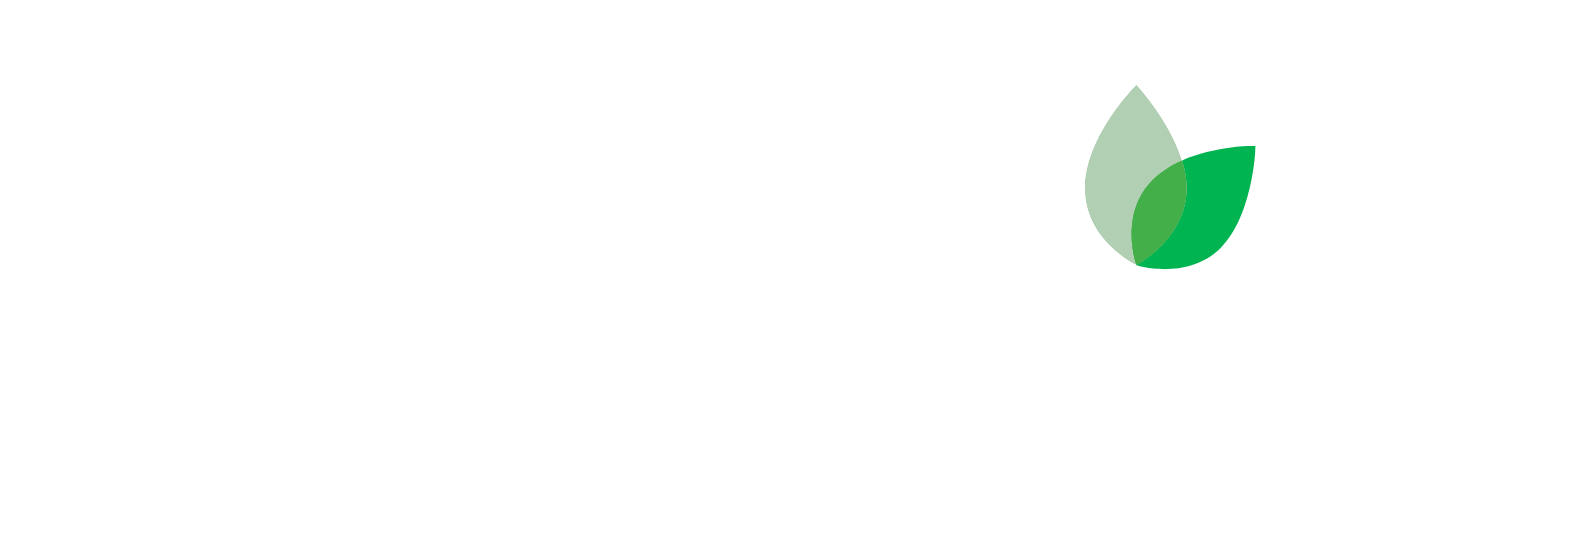 Hudson Technologies logo large for dark backgrounds (transparent PNG)